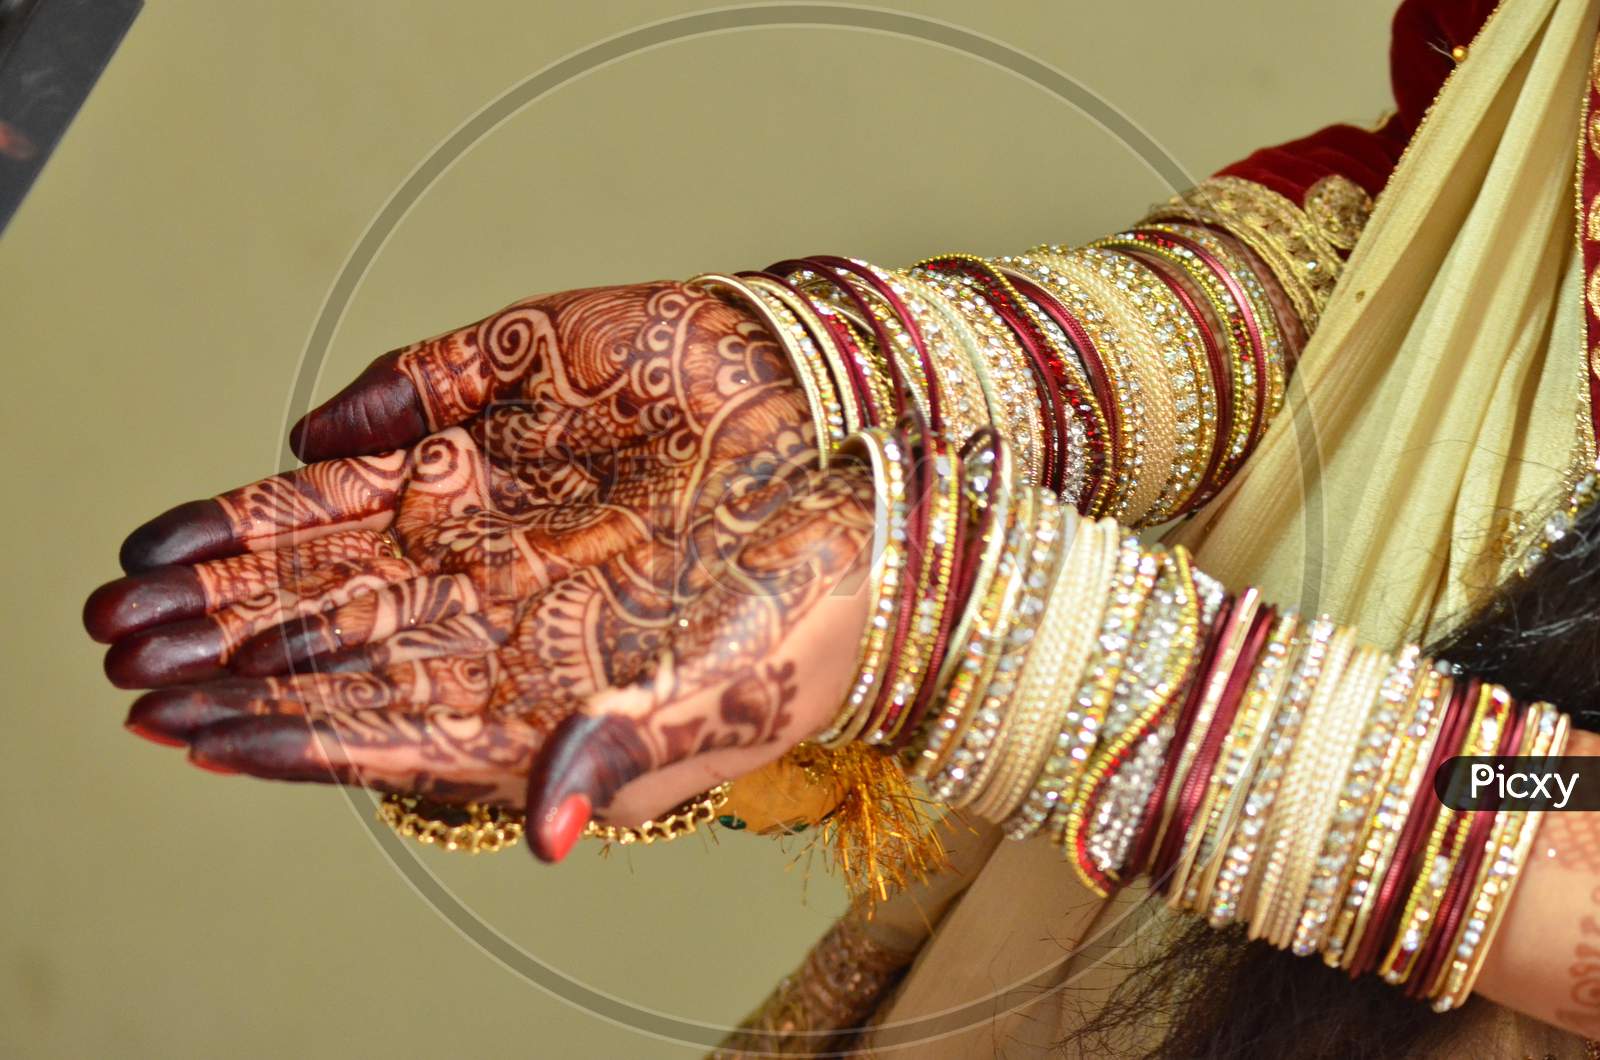 Indian Bride showing Mehndi hands